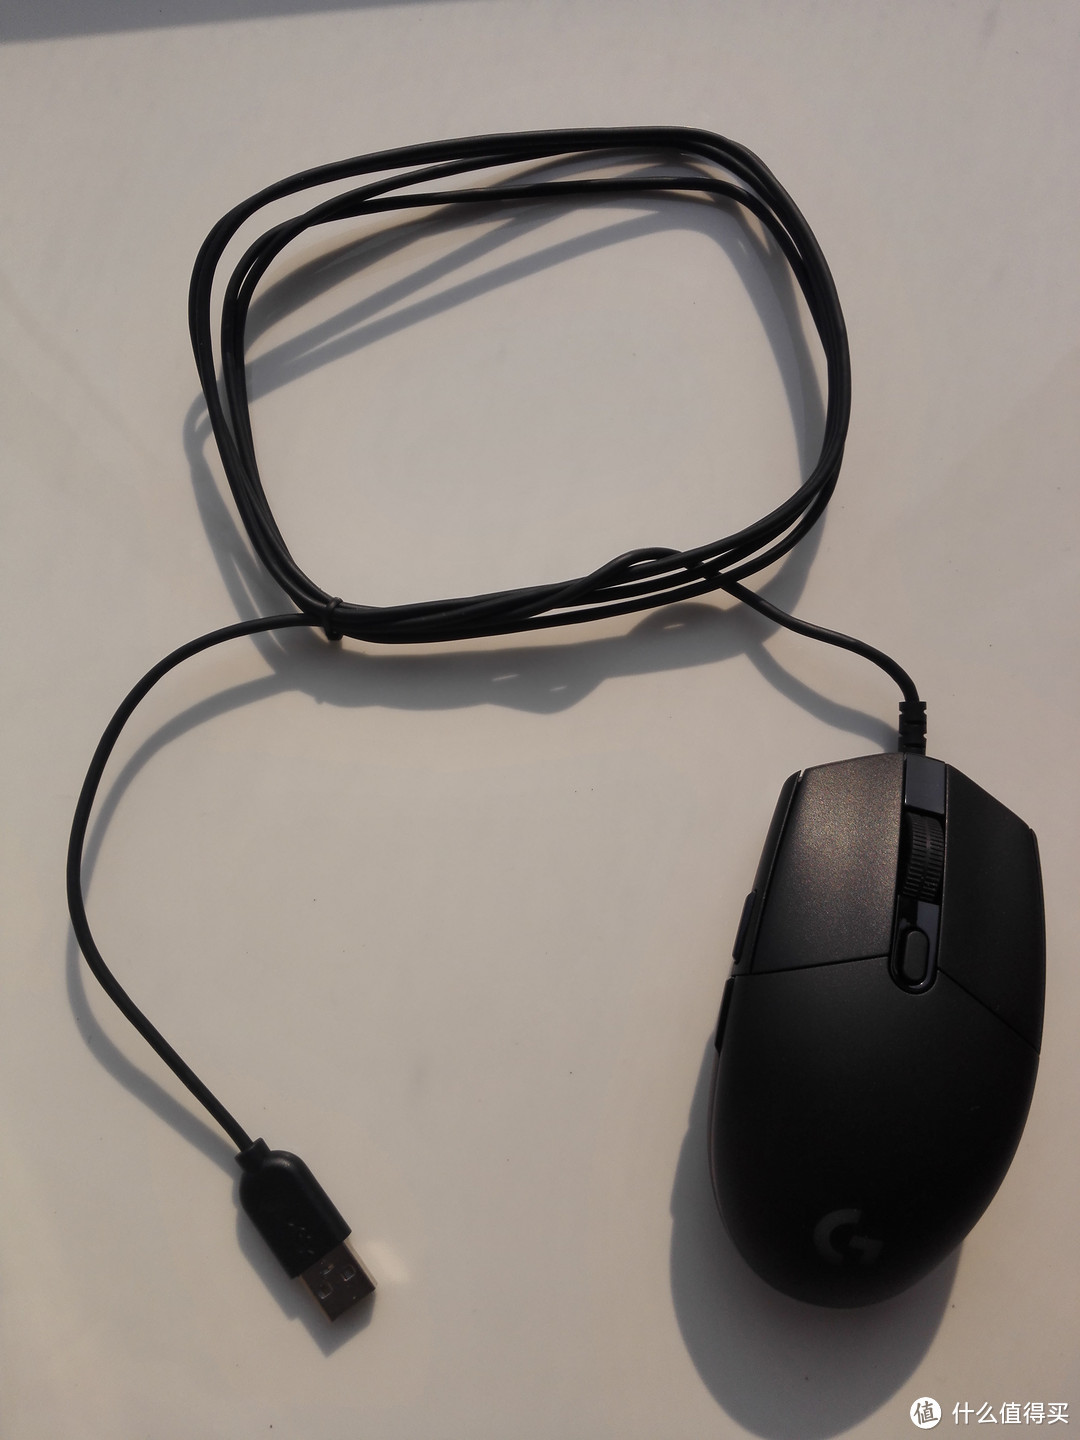 小巧玲珑——Logitech 罗技 G102 Prodigy游戏鼠标轻众测